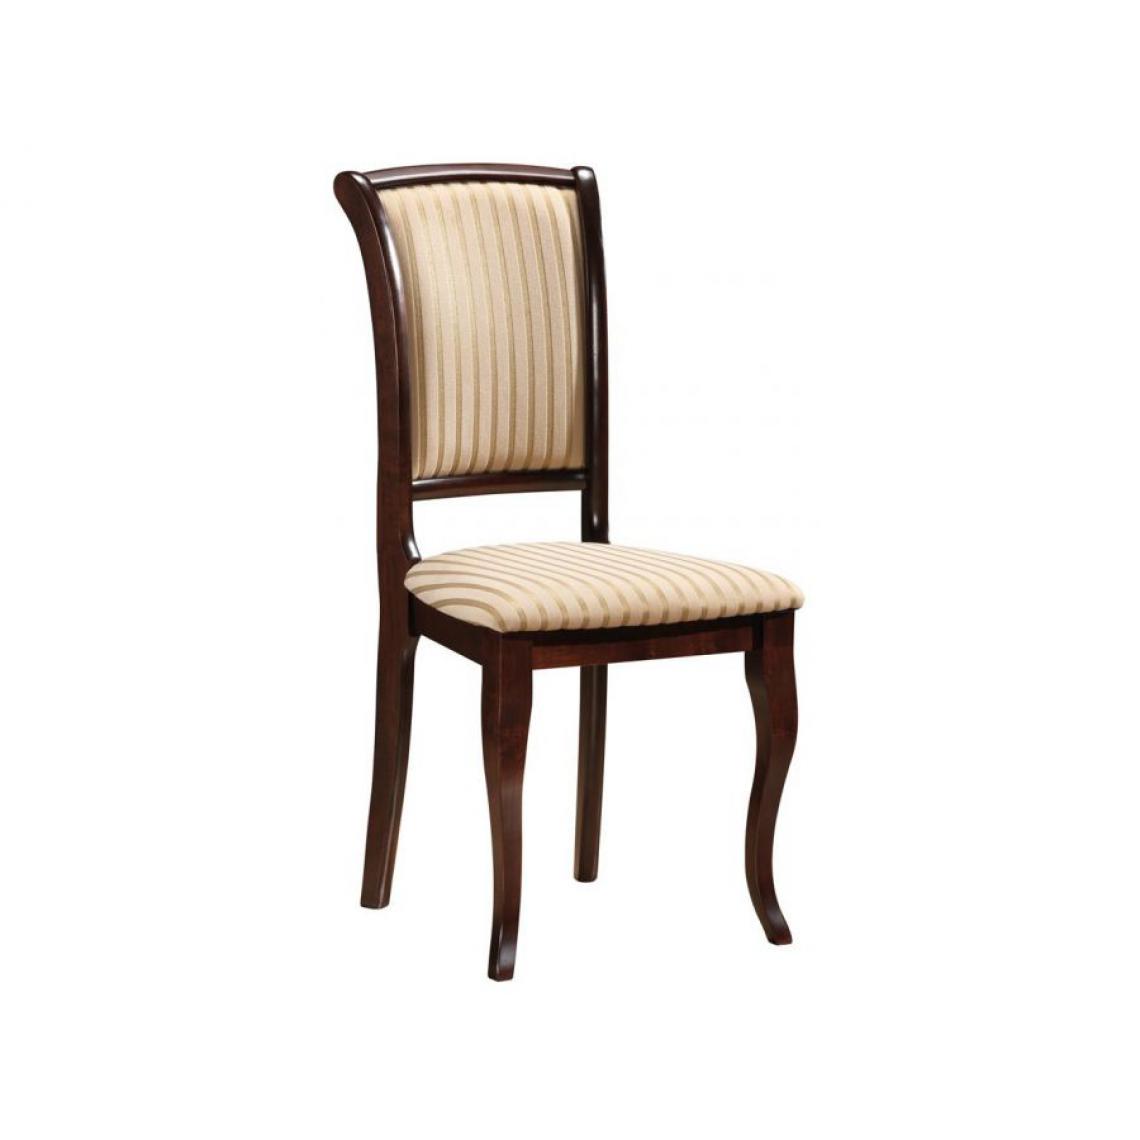 Hucoco - MINIR | Belle chaise style classique salon/salle à manger | 96x45x42 cm | Tissu haute qualité | Cadre robuste en bois - Beige - Chaises